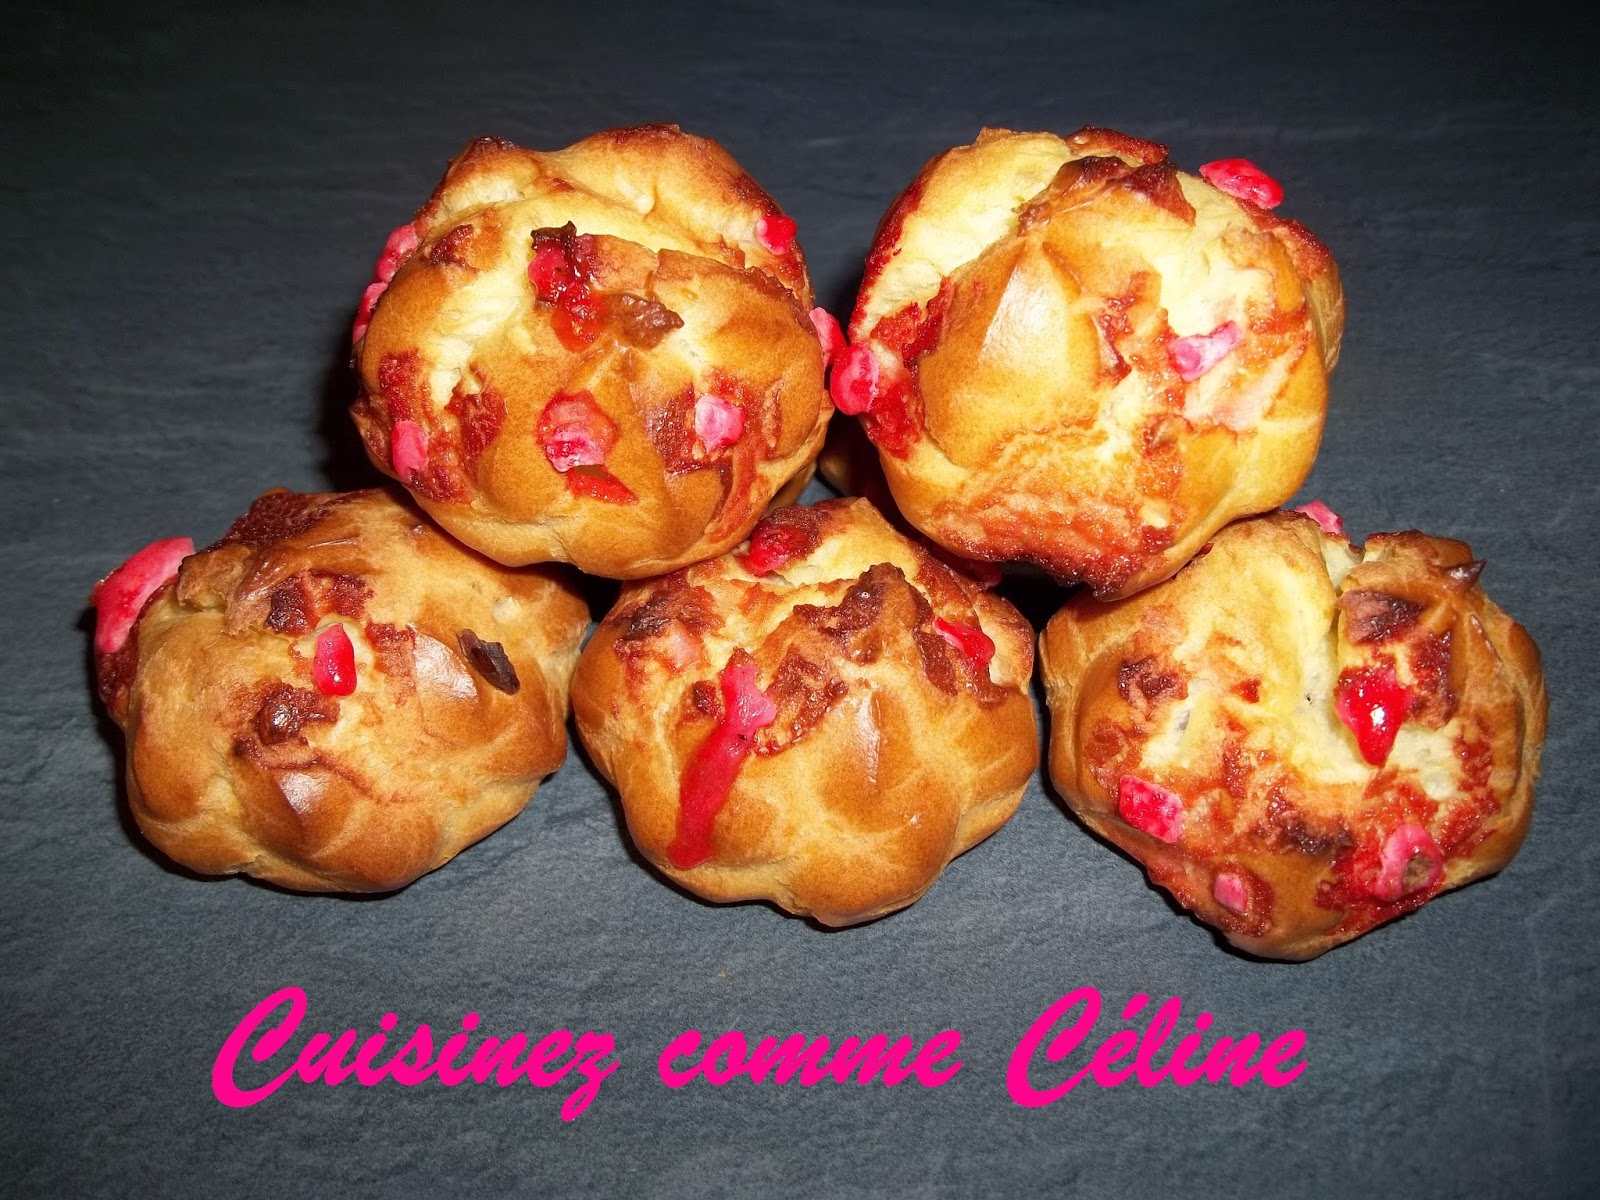 http://cuisinezcommeceline.blogspot.fr/2015/03/chouquettes-praline-rose.html